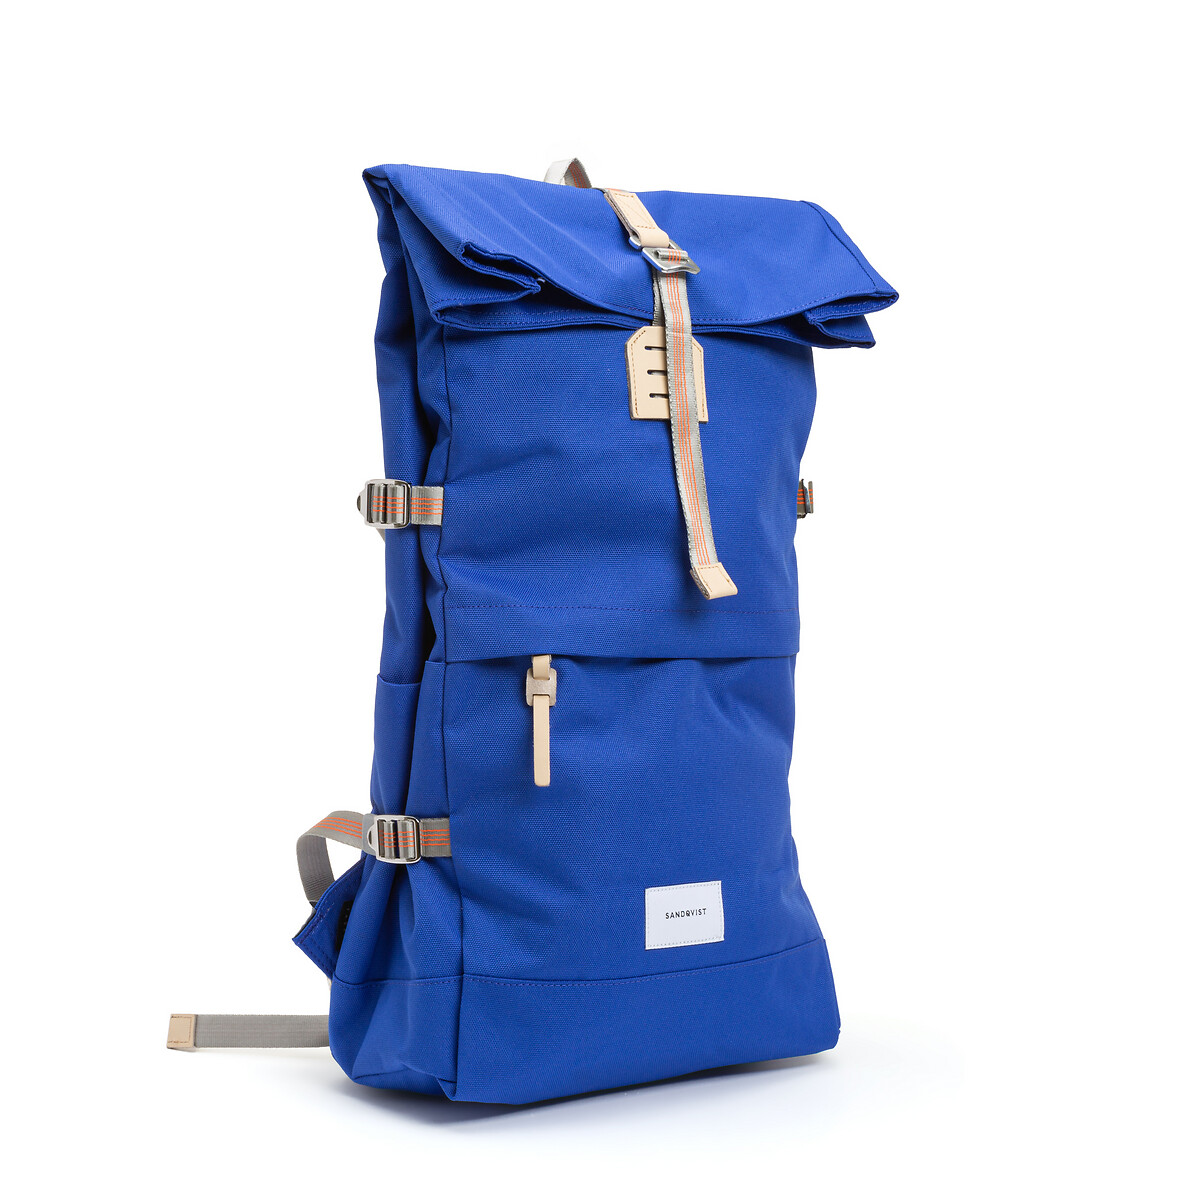 Рюкзак La Redoute С отделением для планшета  л BERNT единый размер синий - фото 2